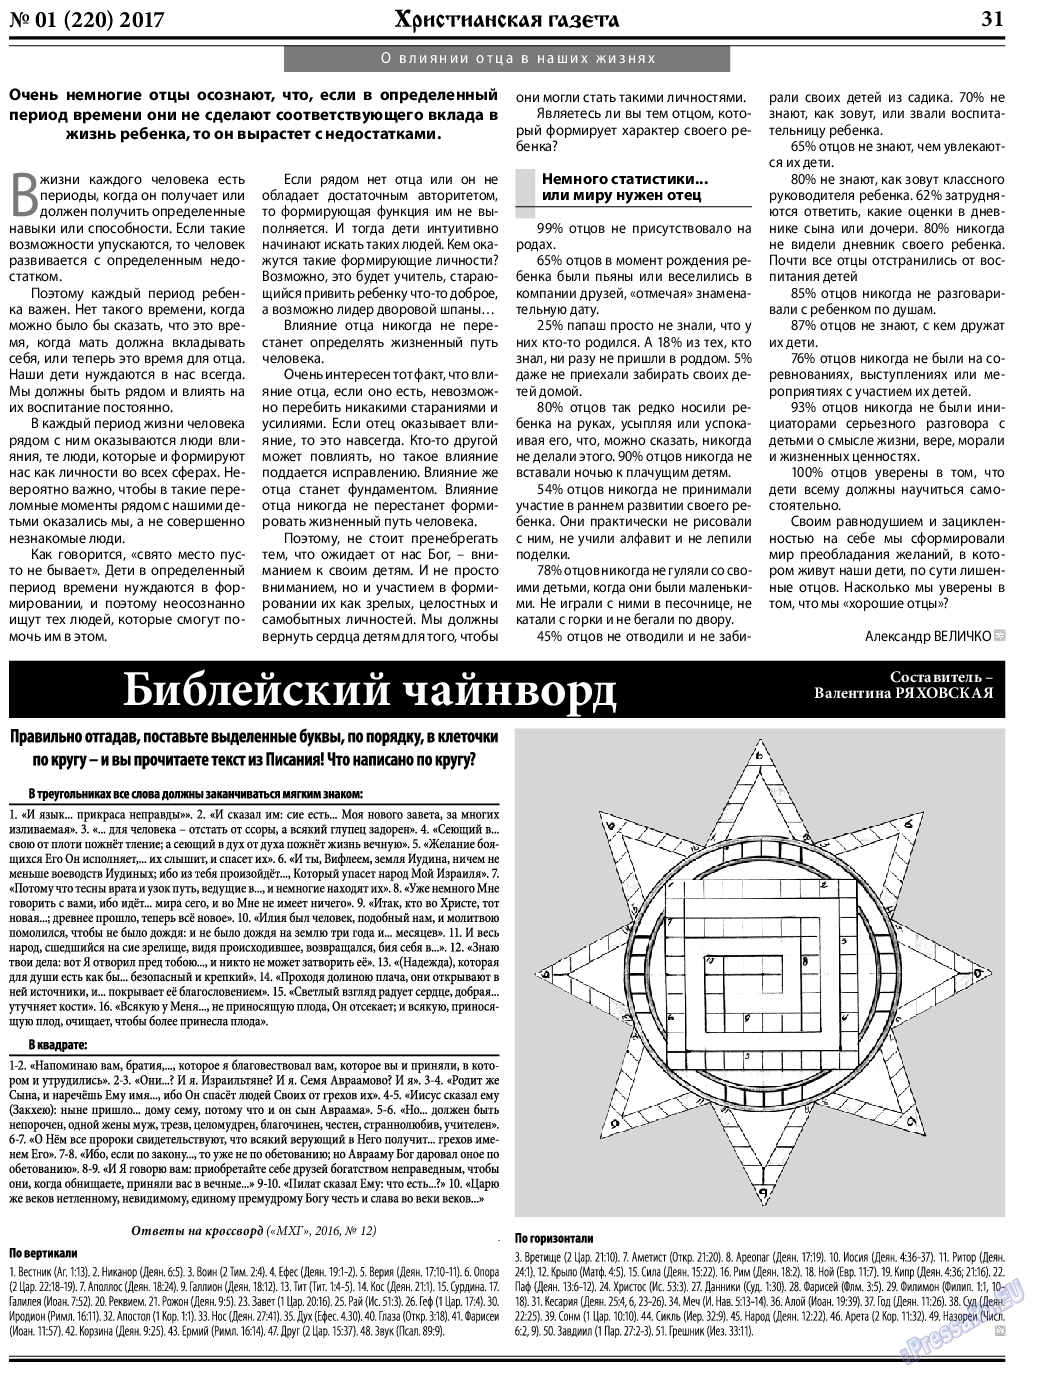 Христианская газета, газета. 2017 №1 стр.31